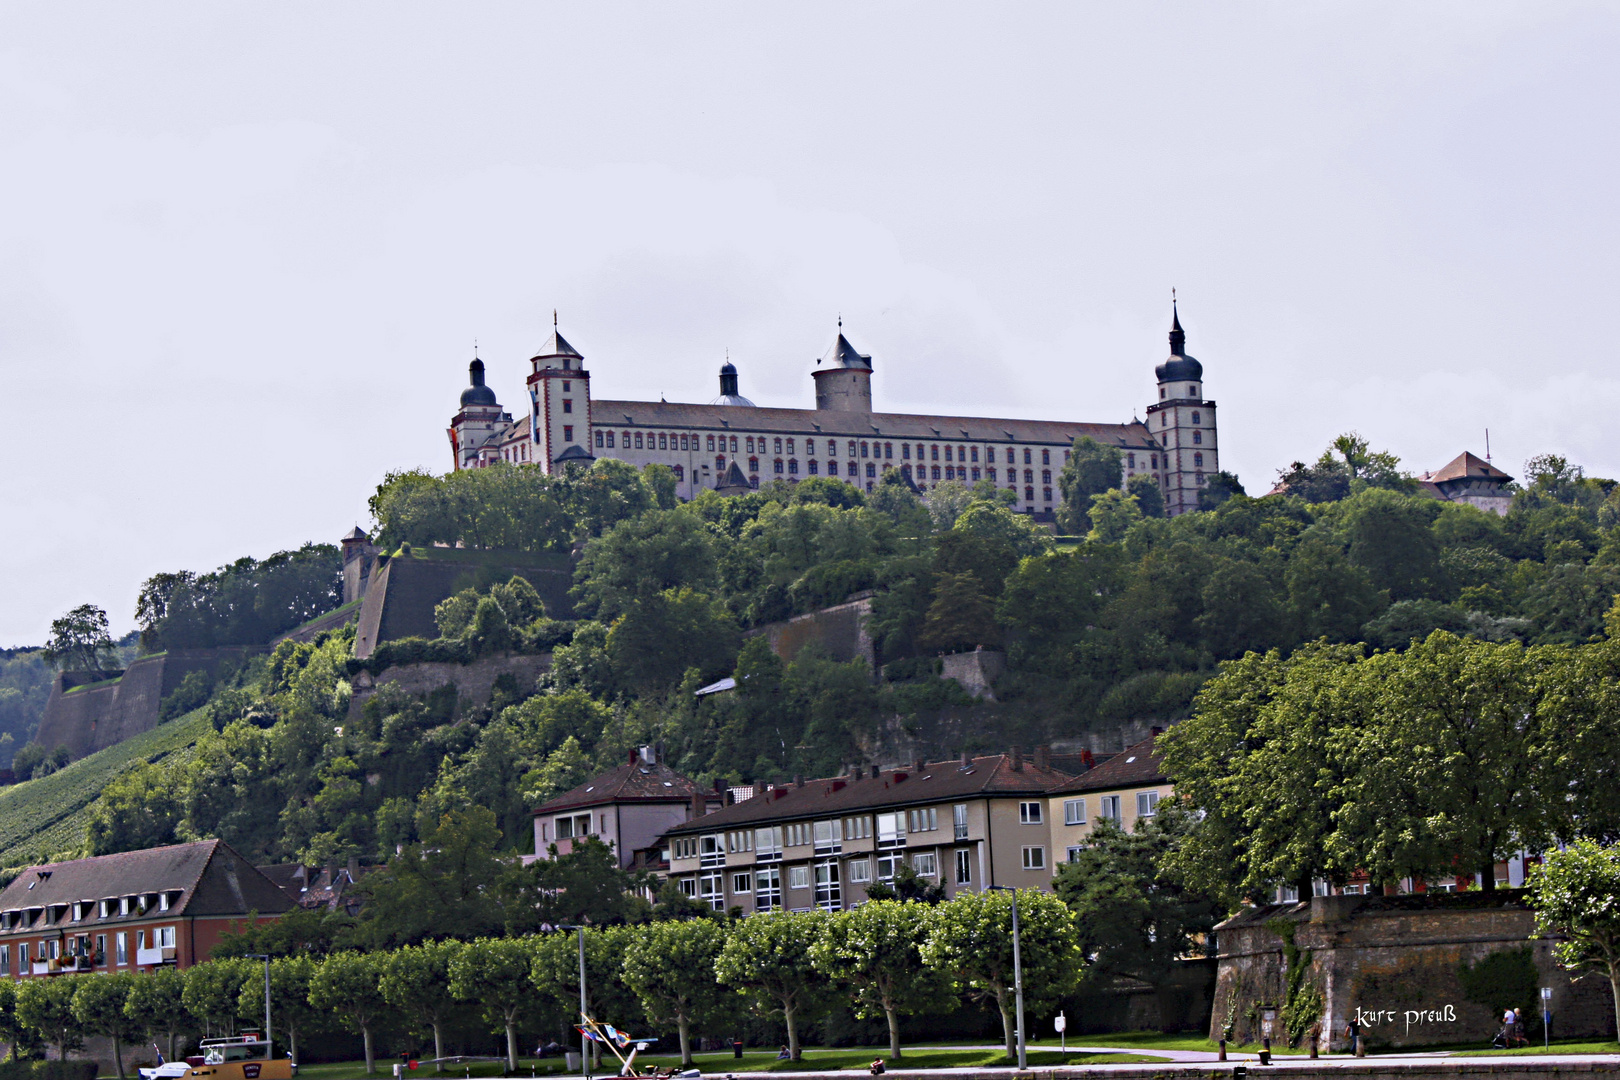 Festung Marienburg in Würzburg